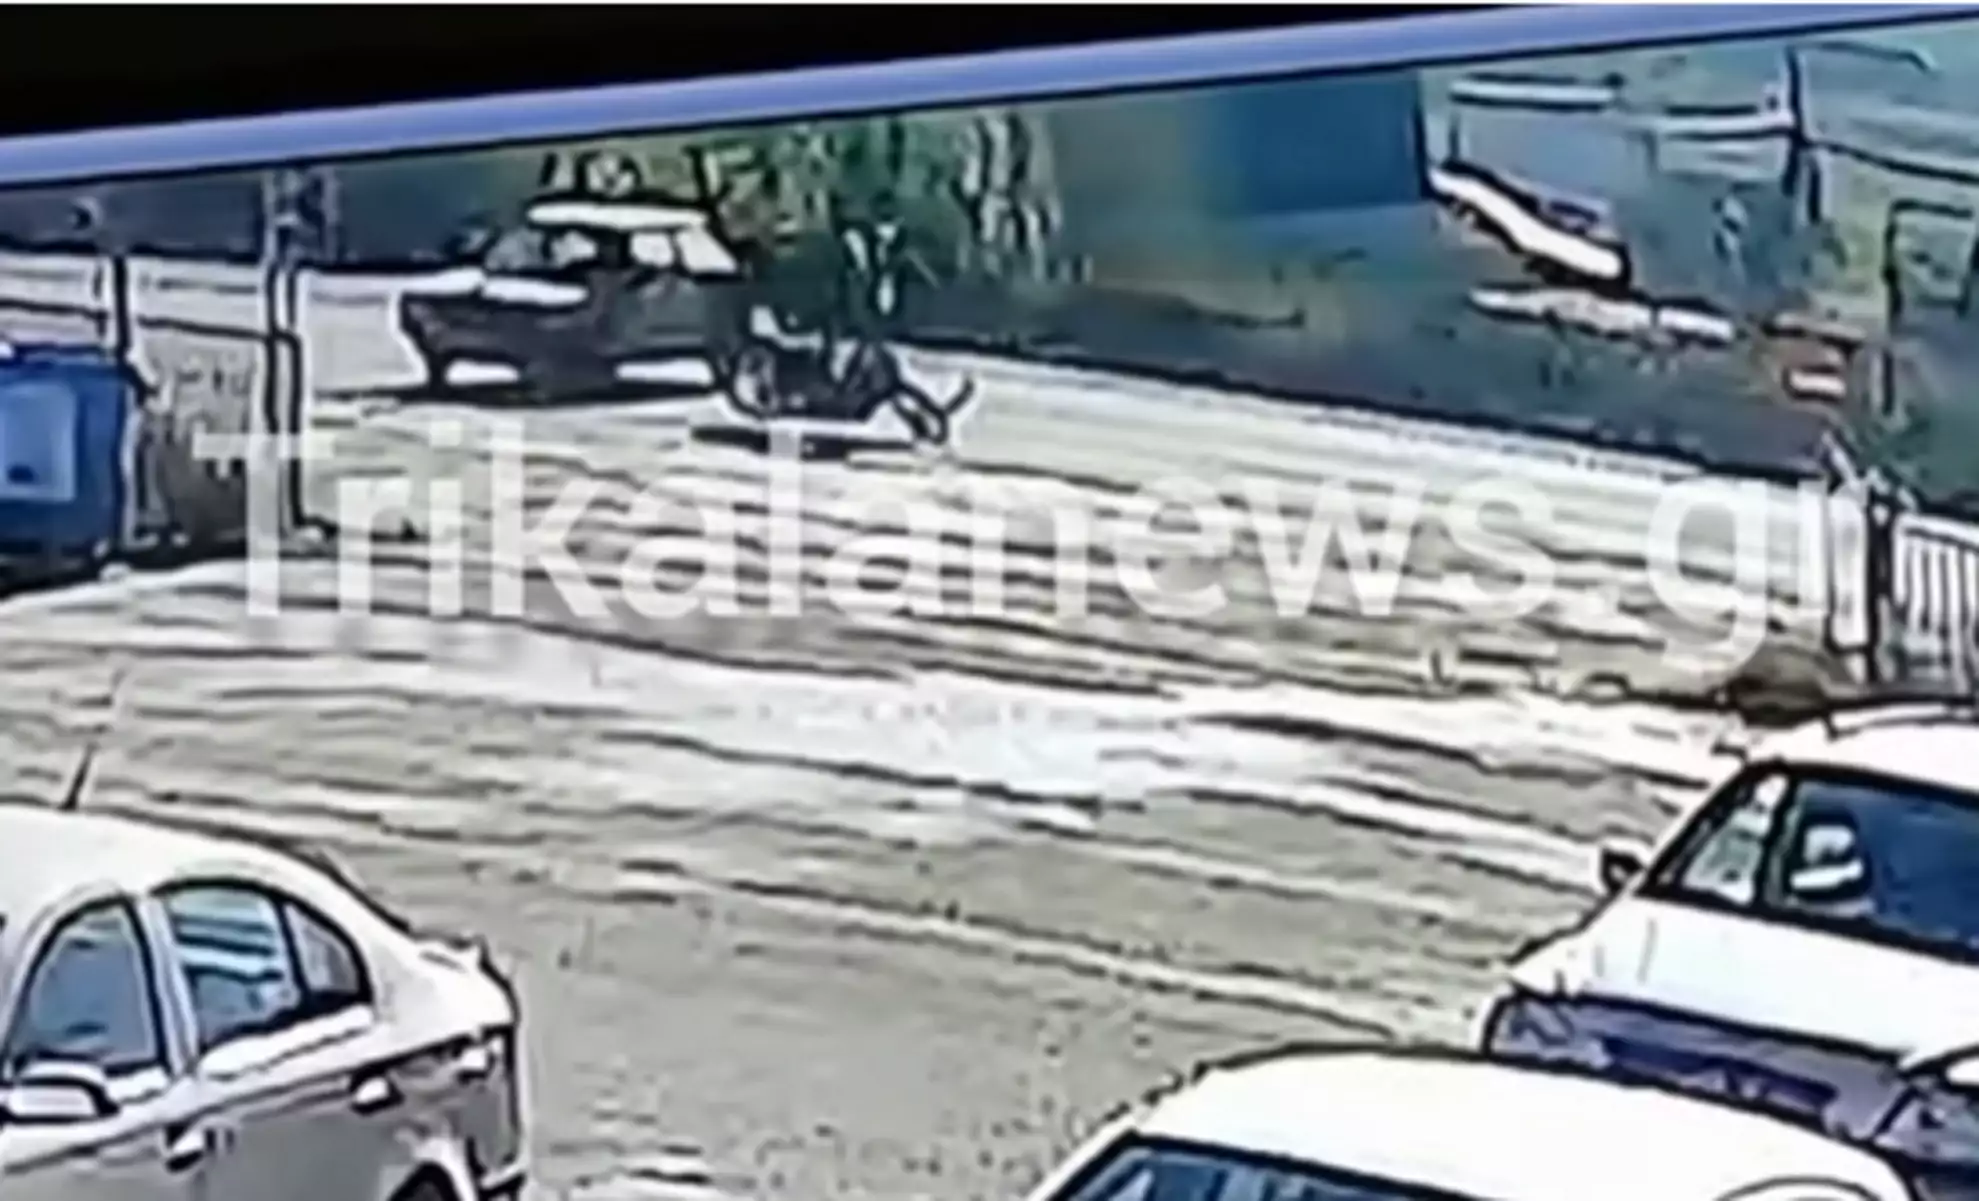 Τρίκαλα: Σοκαριστικό βίντεο από τροχαίο με εγκατάλειψη – Έριξε στο έδαφος αναβάτη μηχανής και εξαφανίστηκε